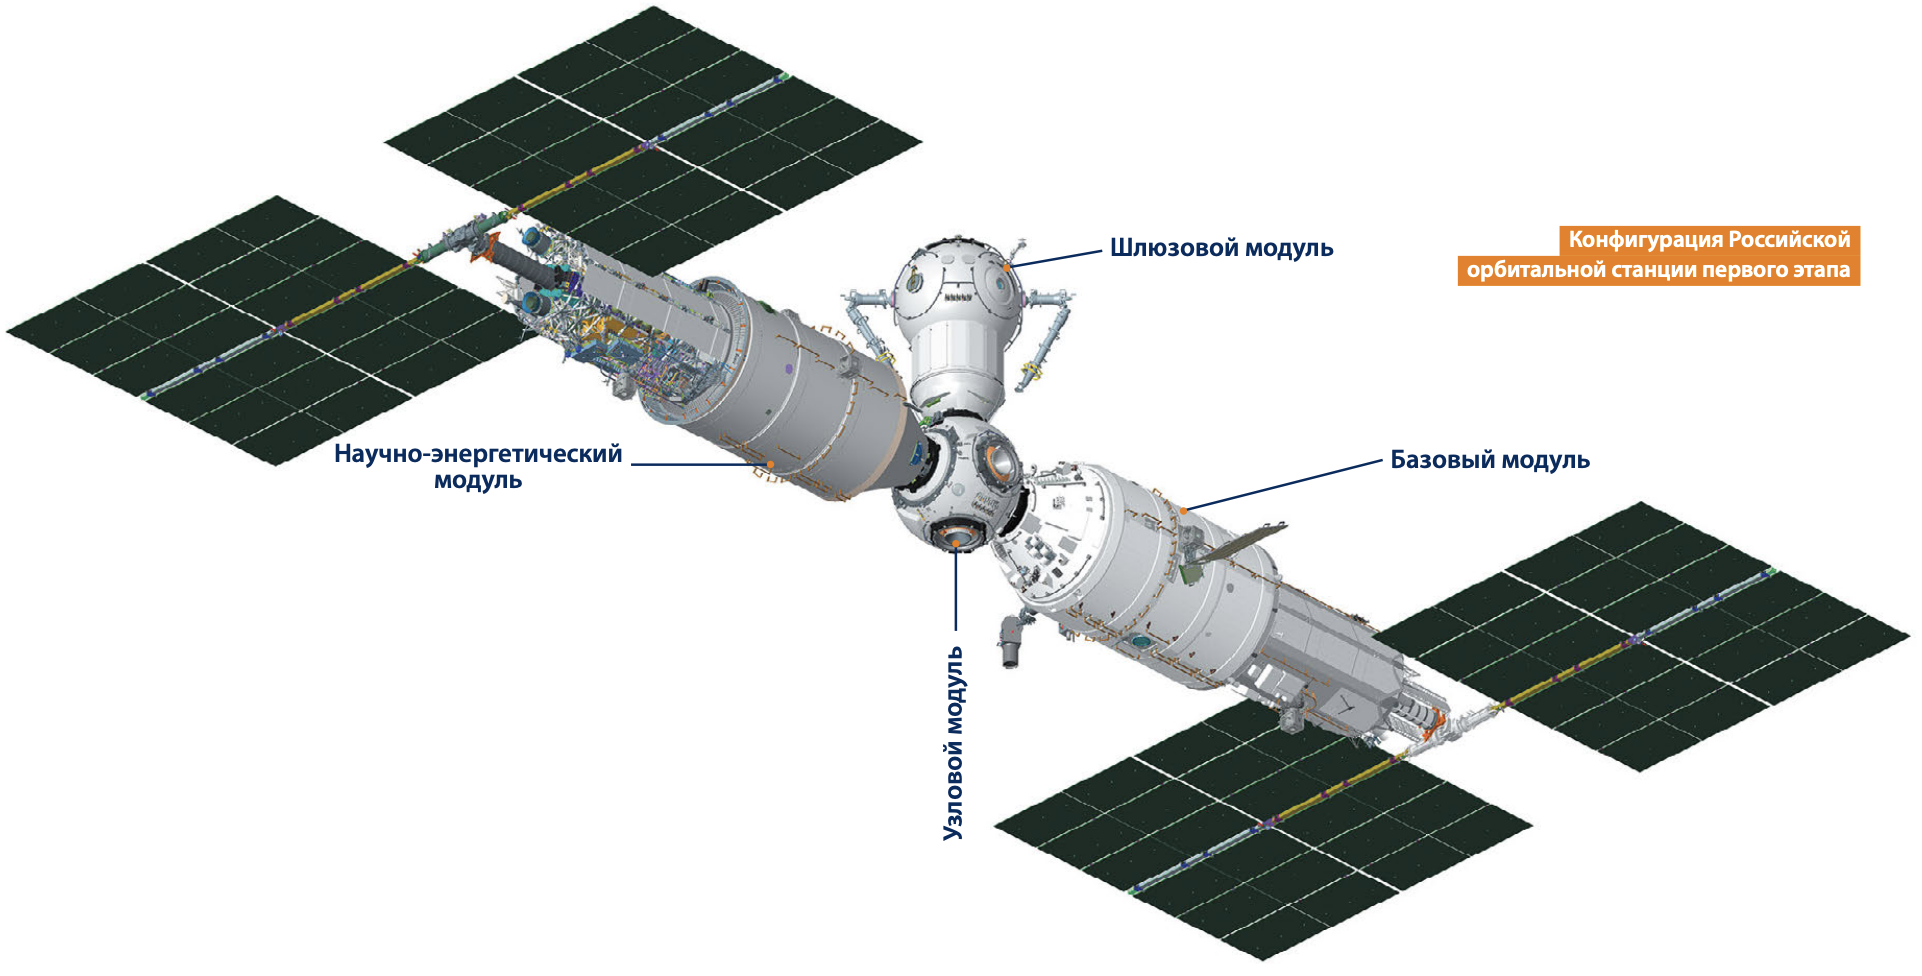 В новом выпуске журнала «Русский космос» раскрыты подробности одного из вариантов РОСС - 4